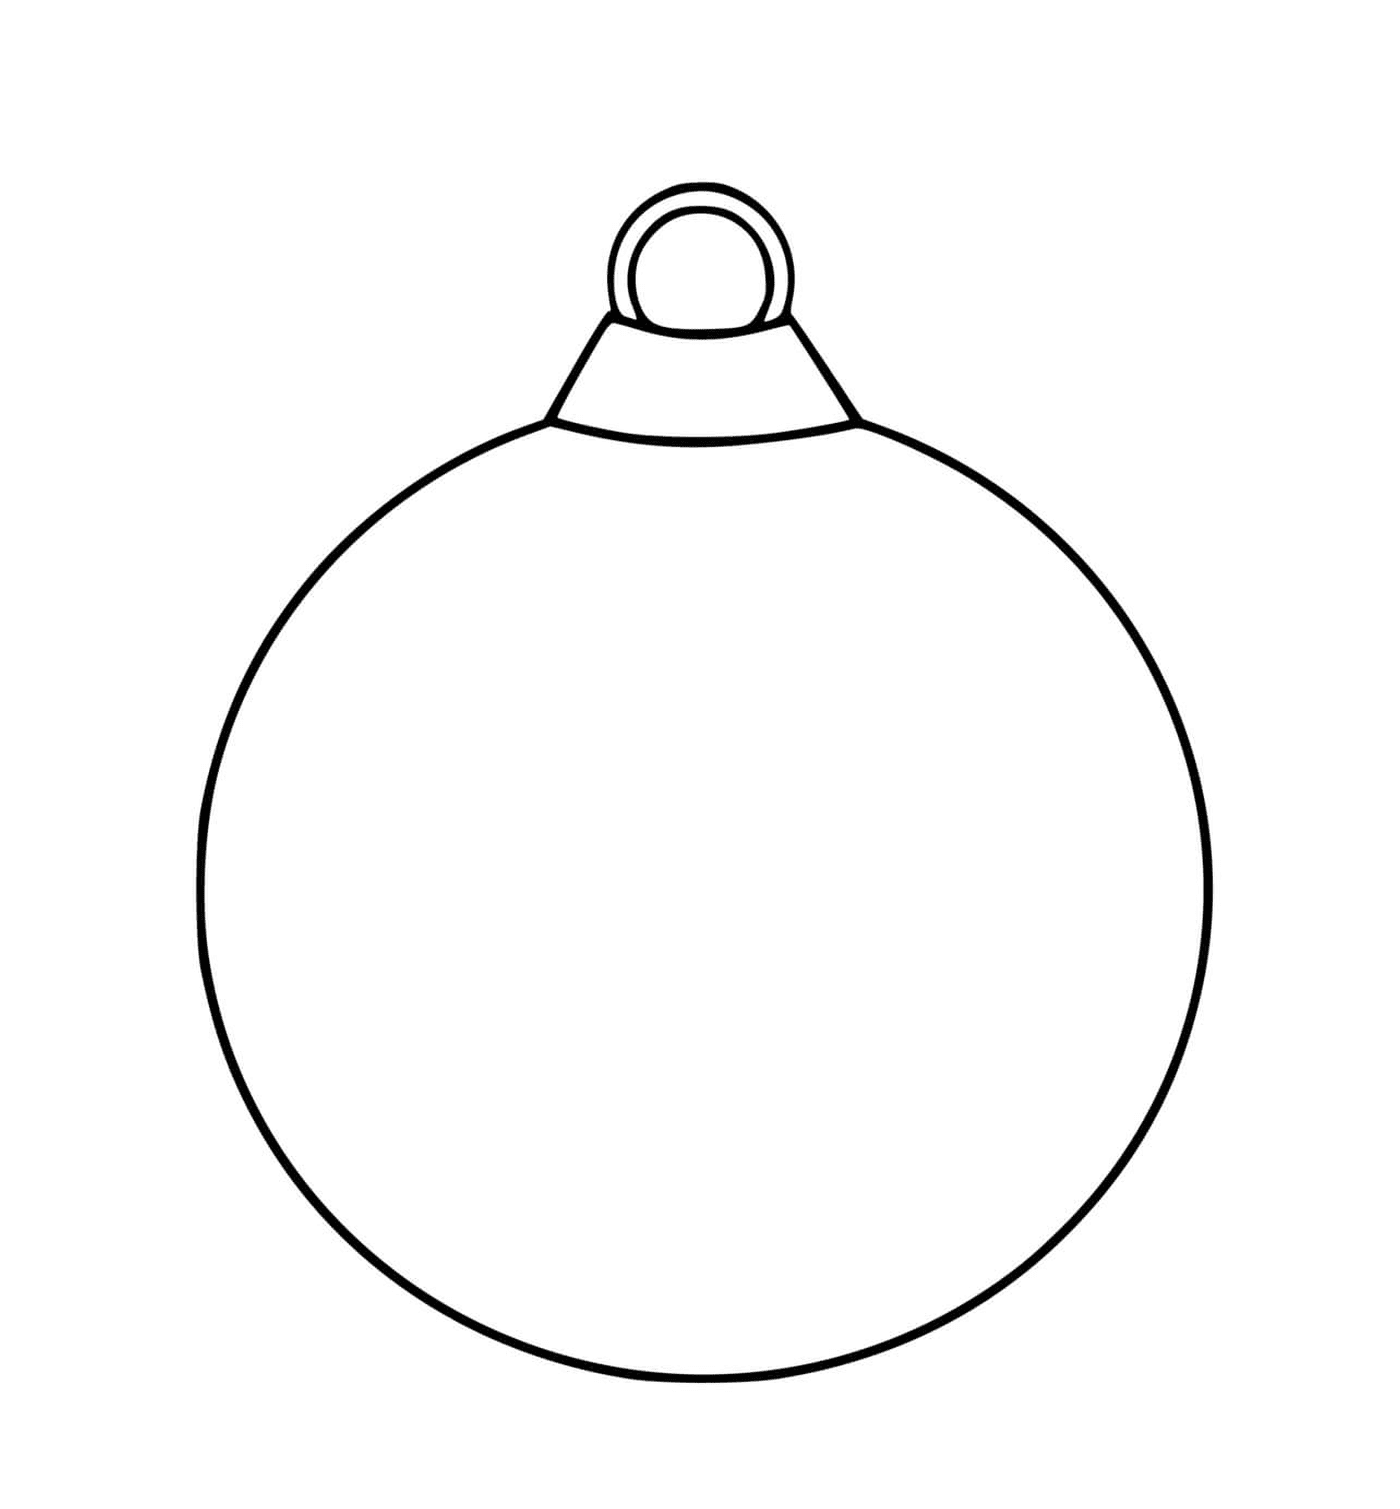  Uma bola de Natal vazia com um contorno preto simples 